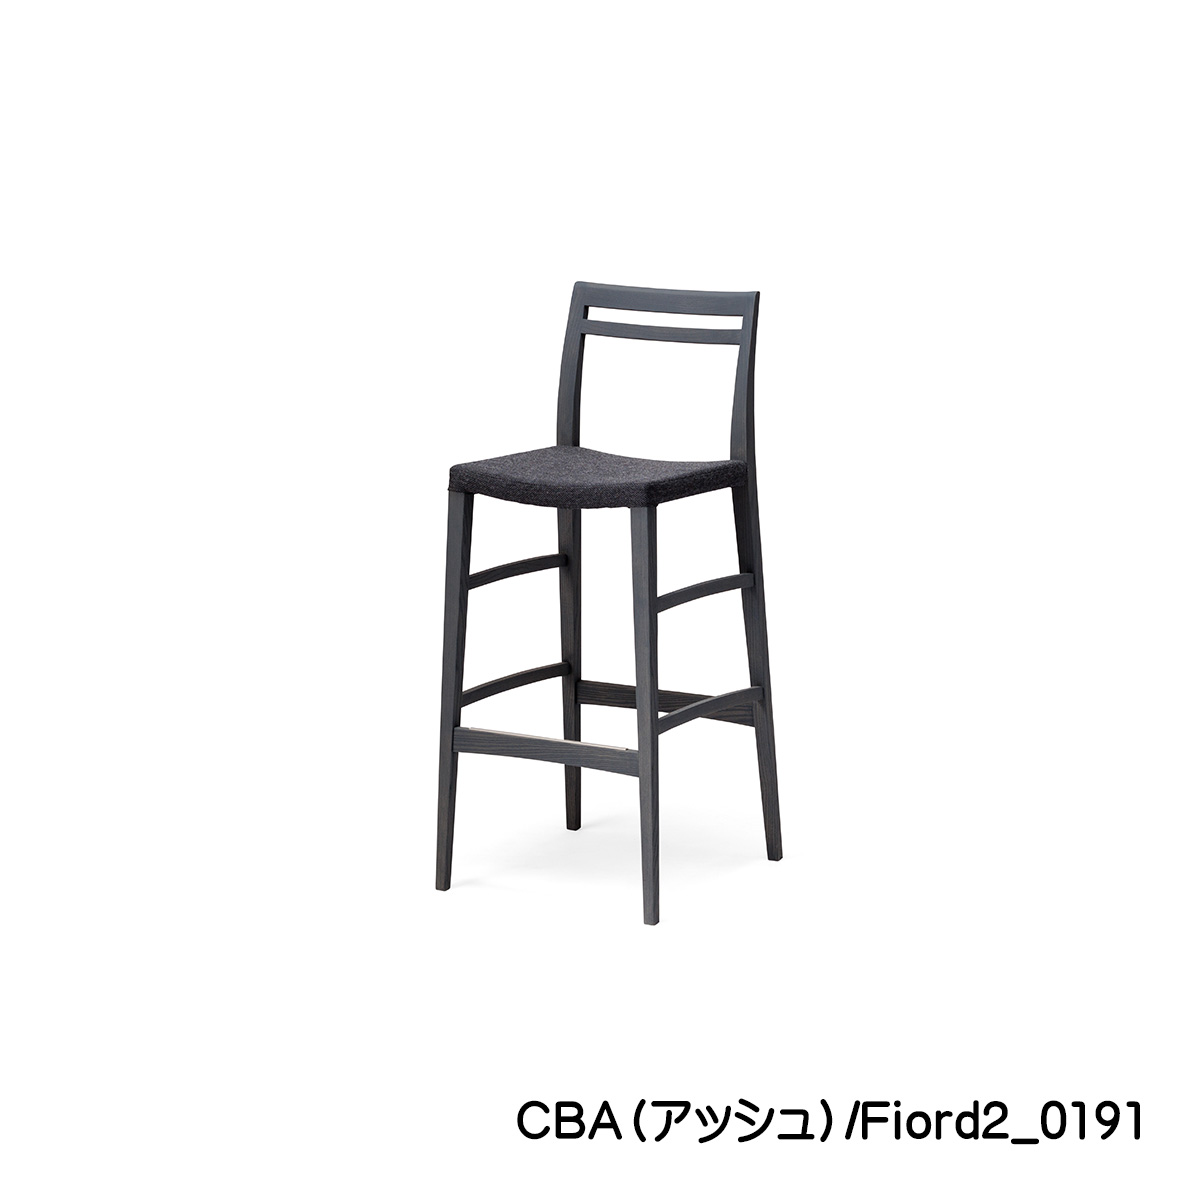 バーチェア65㎝or75㎝「FIKA（フィーカ）」カーボンアッシュ（CBA）は、アッシュ材にチャコールグレーを塗装したブラックカラーに近いお色です。シックなデザインによく合います。